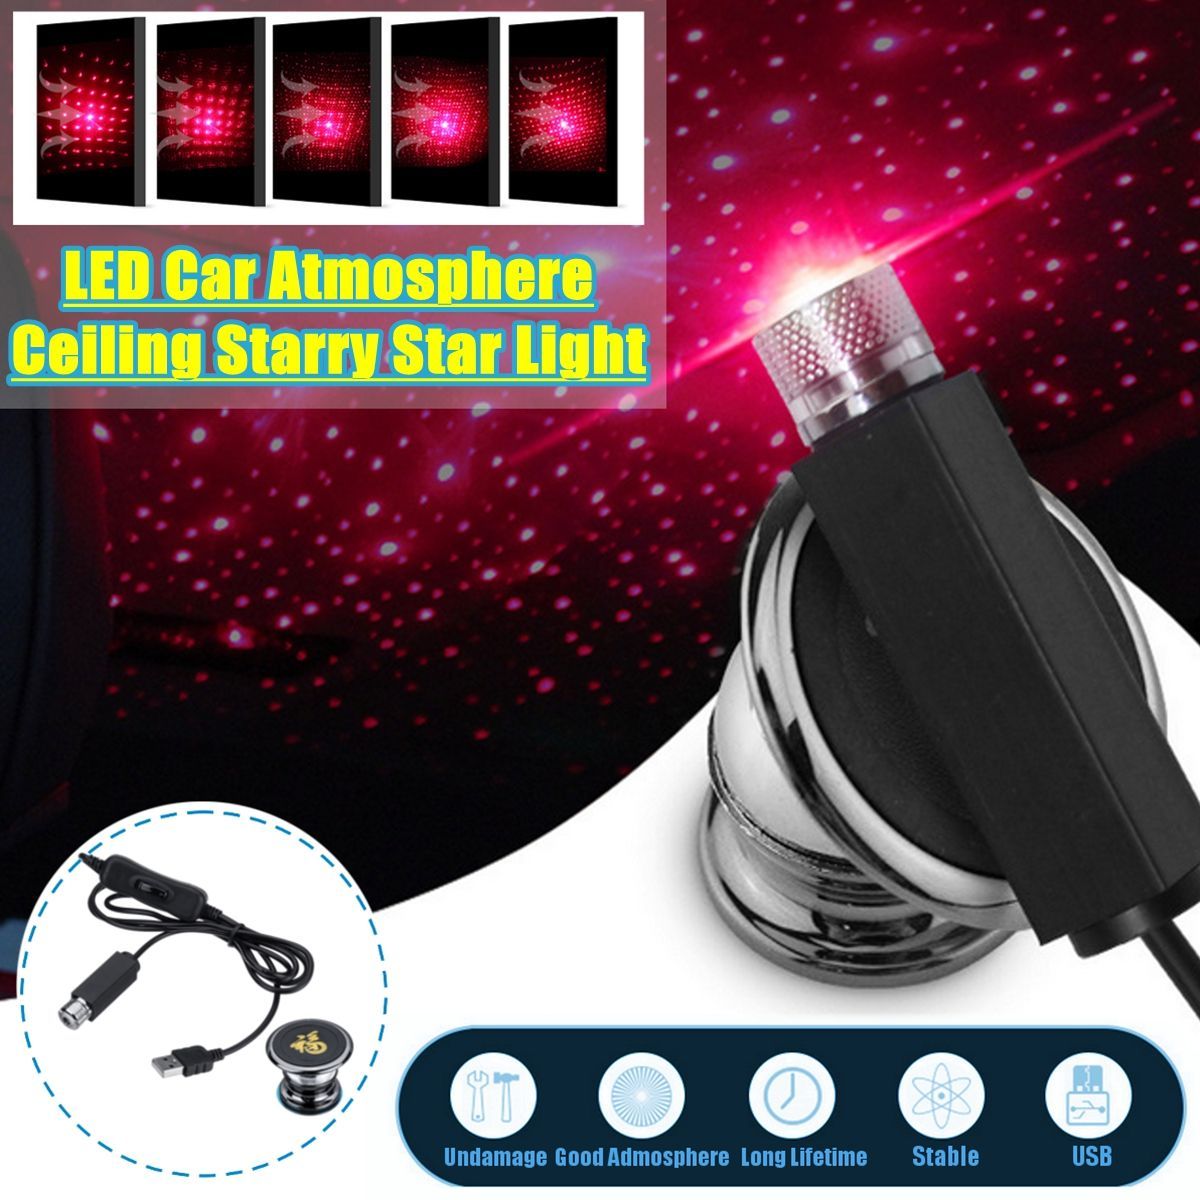 Car-LED-Atmosphere-Ceiling-Starry-Star-Lights-Roof-Decoration-Lamp--360degAdjustable-USB-5V-1W-1555292